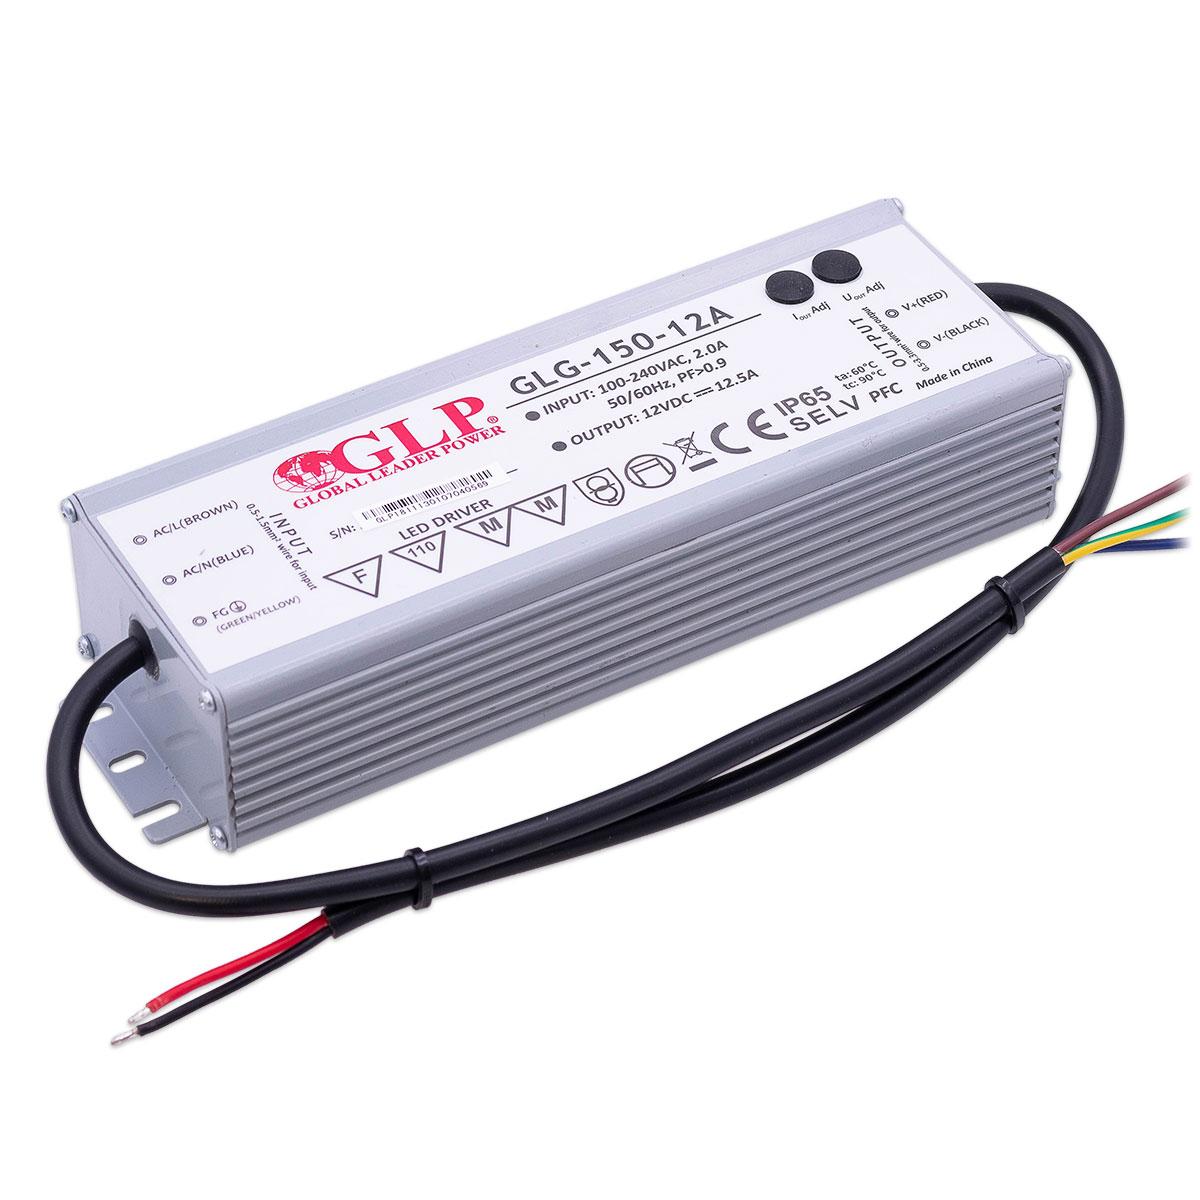 GLP GLG-150-12 LED Netzteil 150W 12V 12.5A IP65 Schaltnetzteil CV